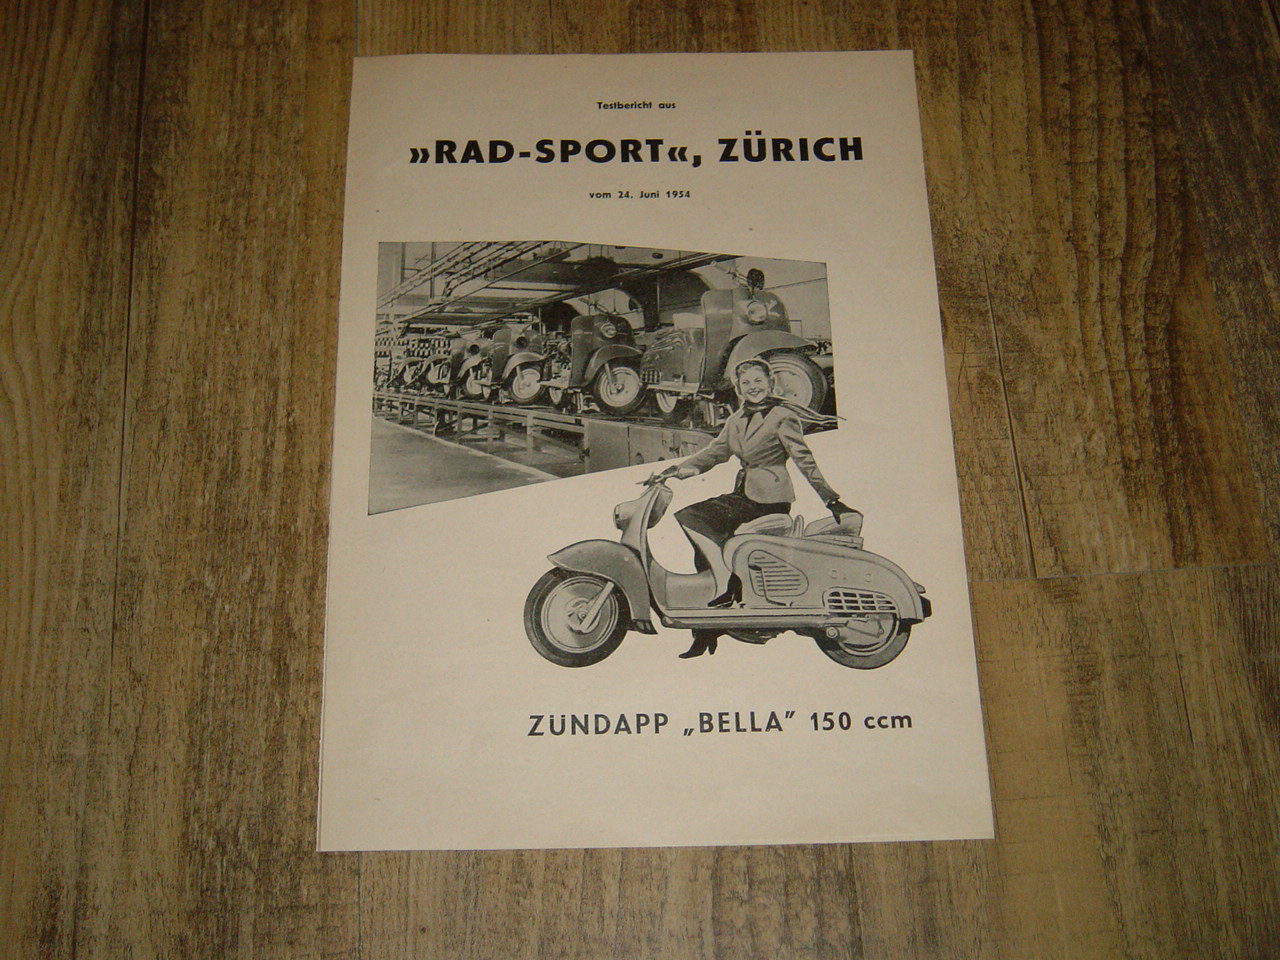 Promotional brochure D - Testbericht der Zündapp Bella 150 1954